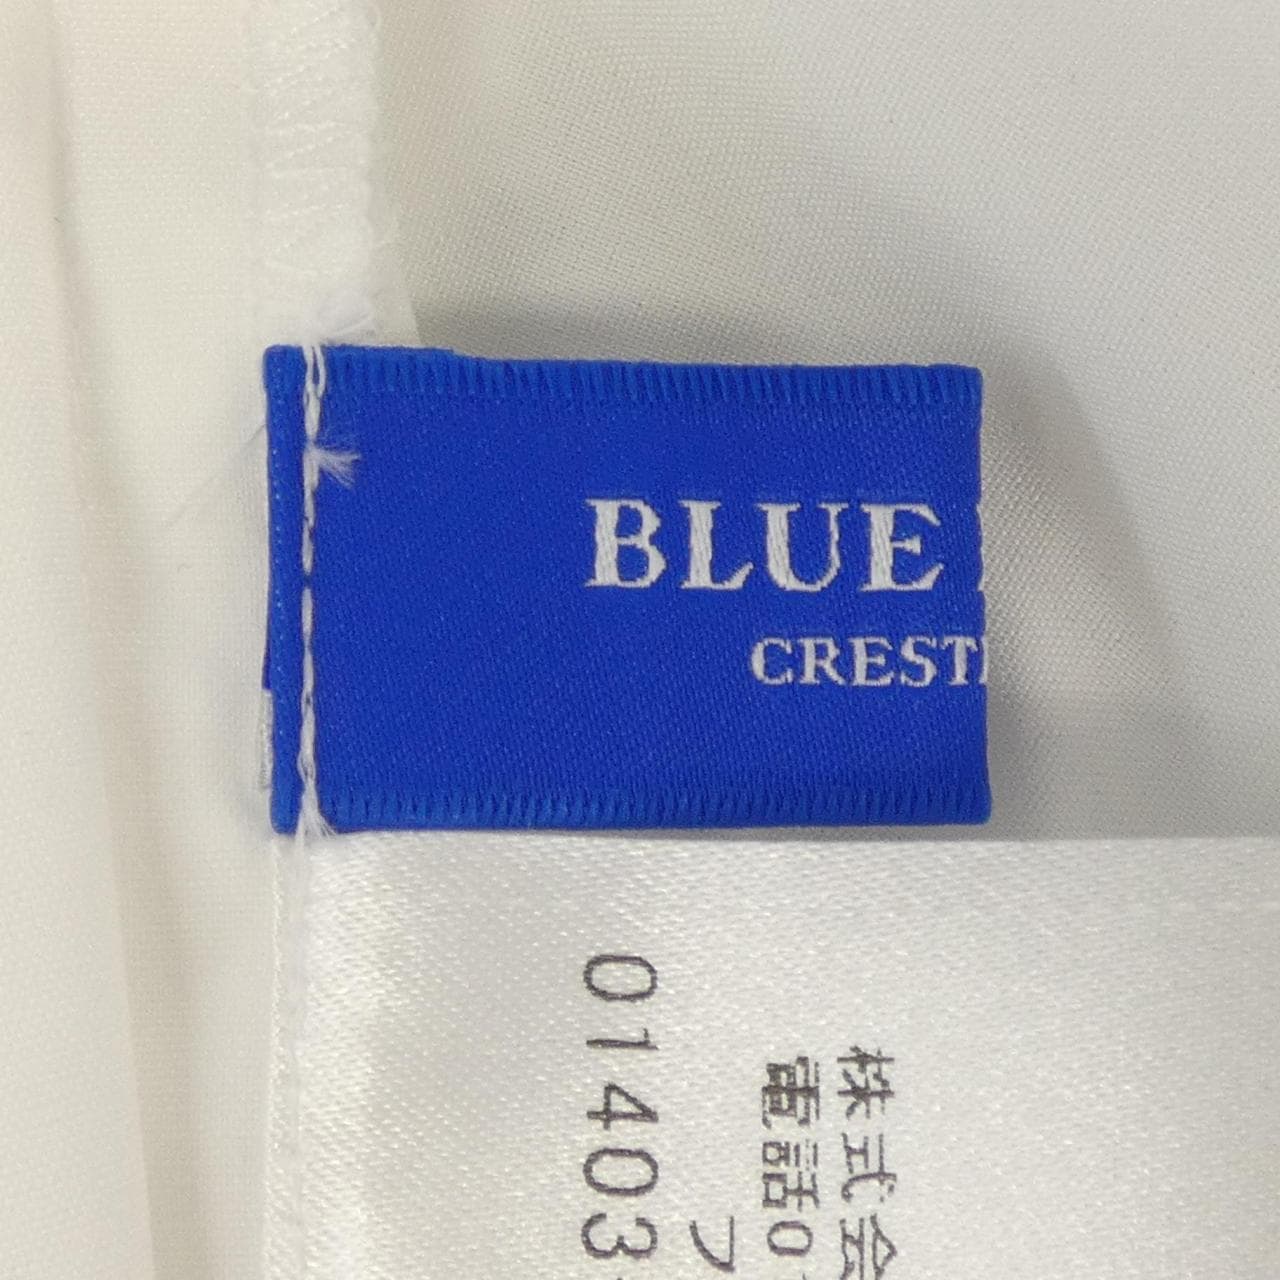 ブルーレーベルクレストブリッジ BLUE LABEL CRESTBRID シャツ